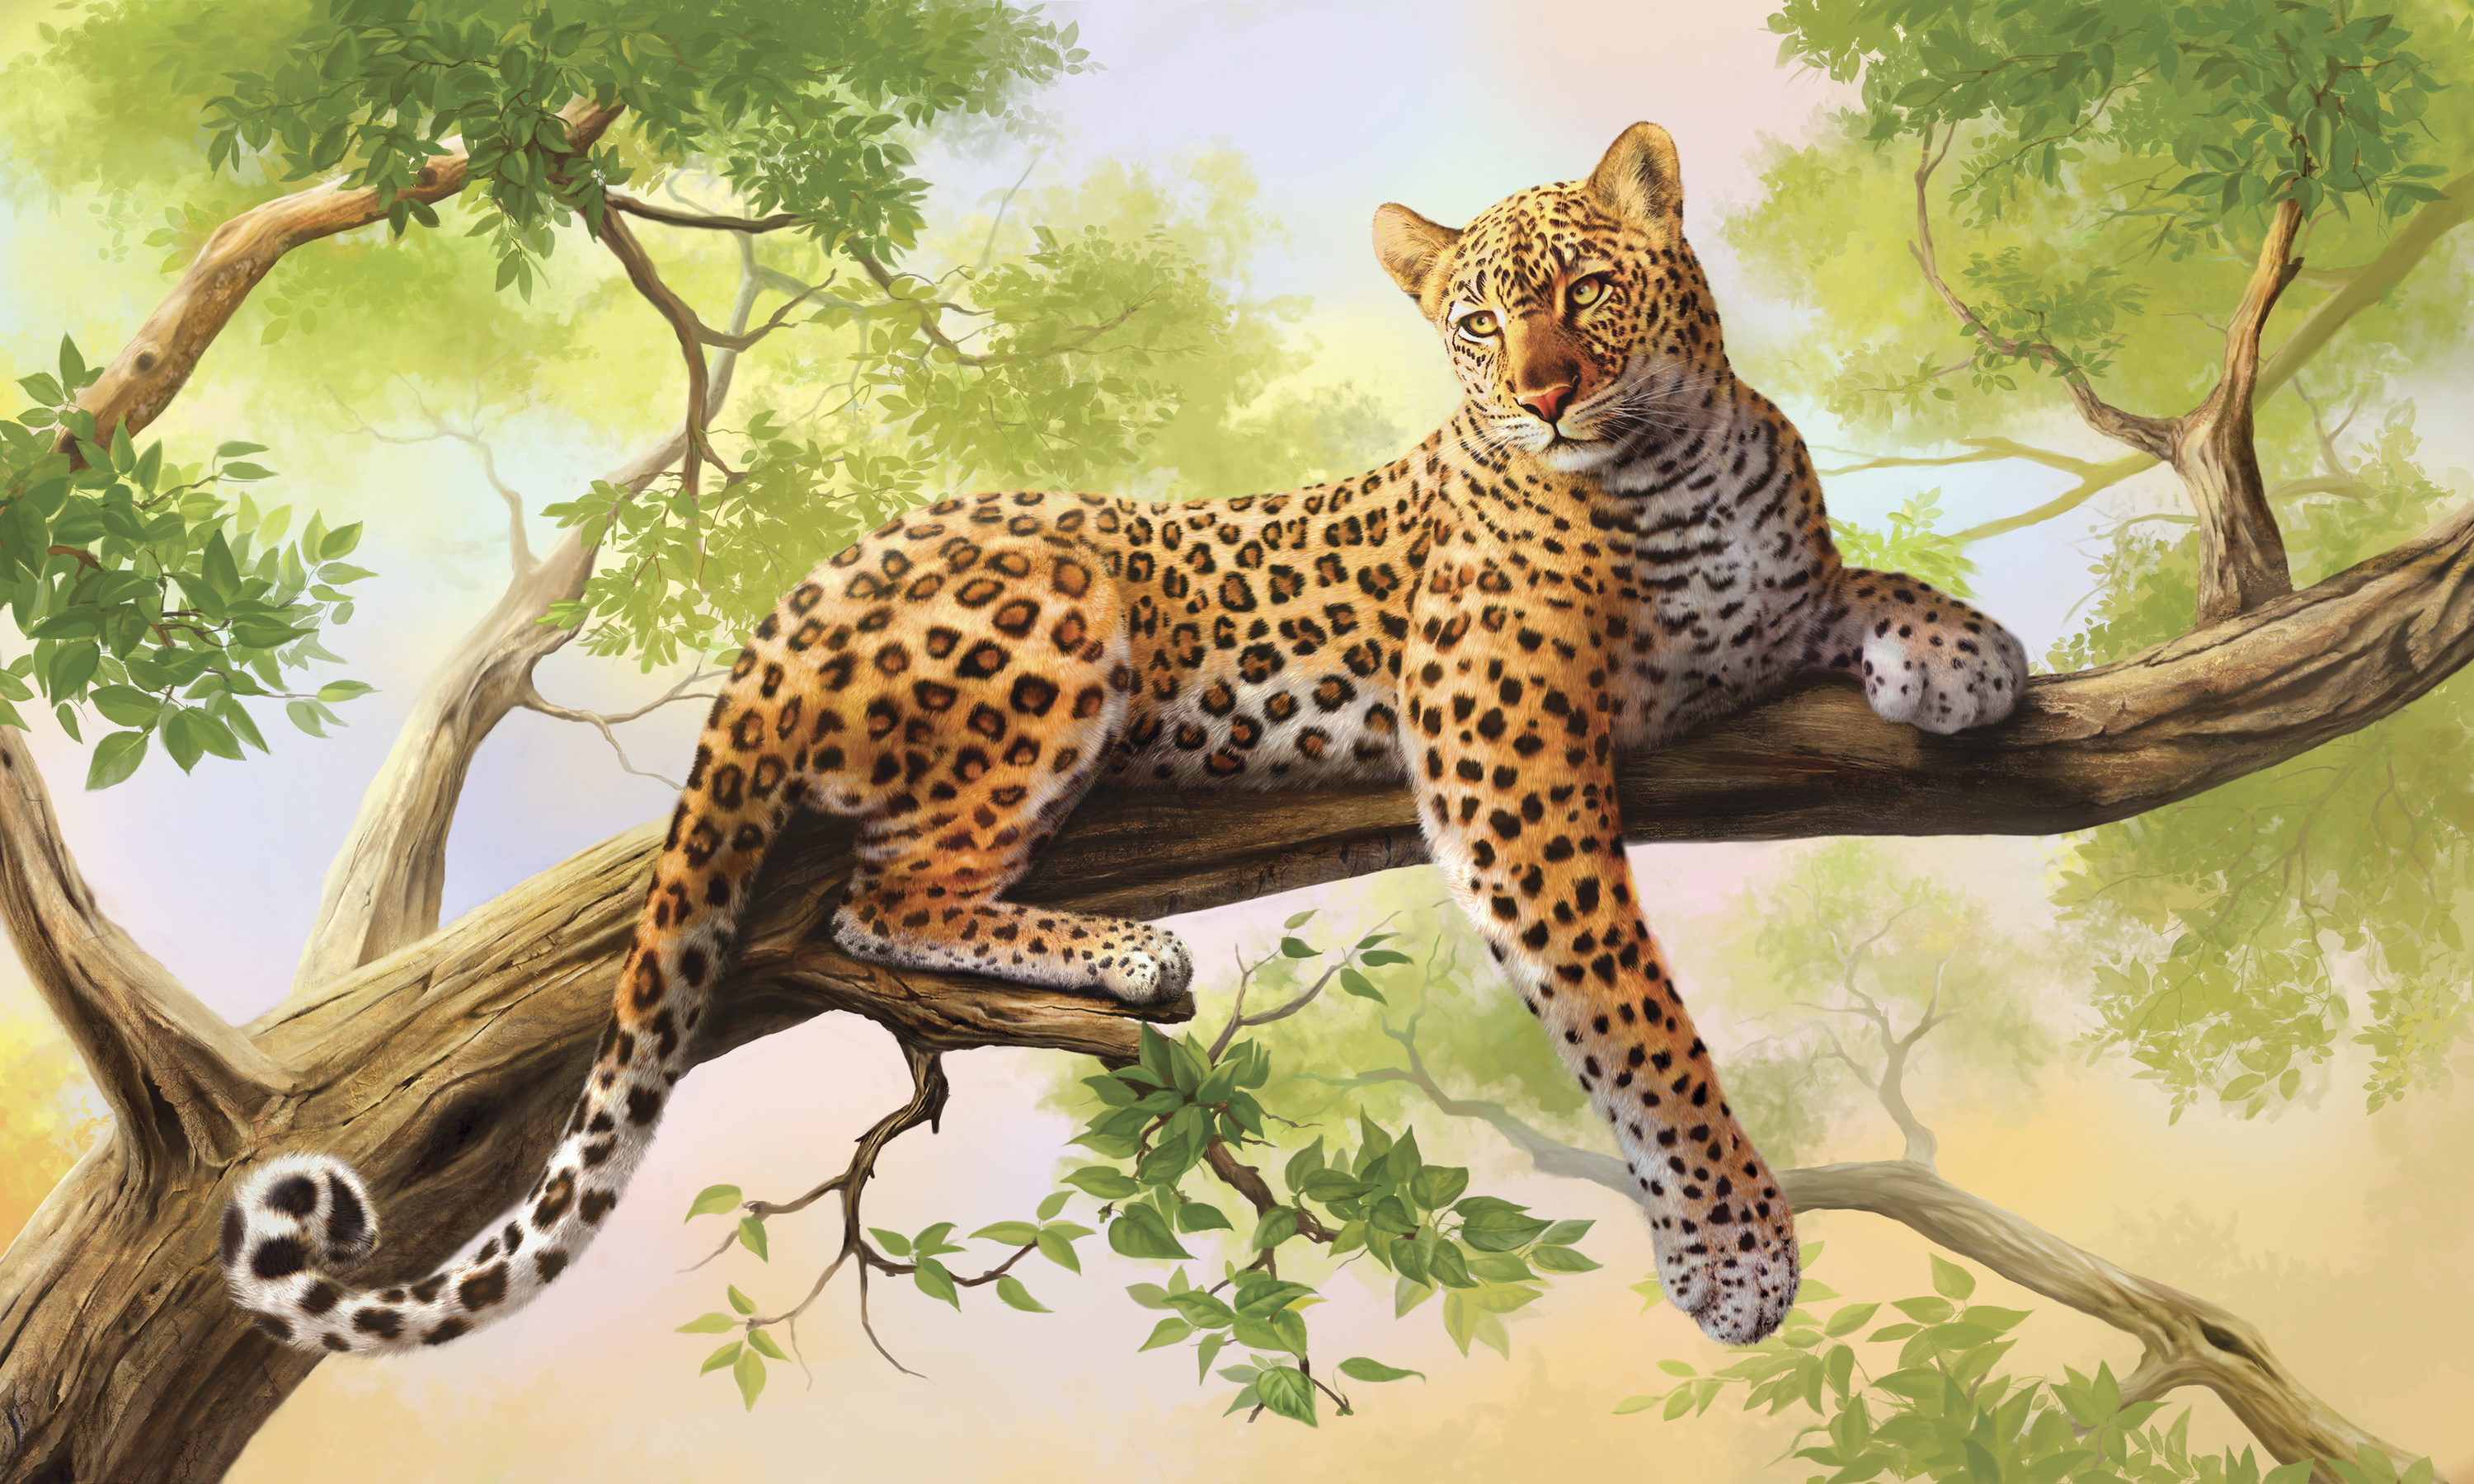 Leopard Art by Keven Beyit